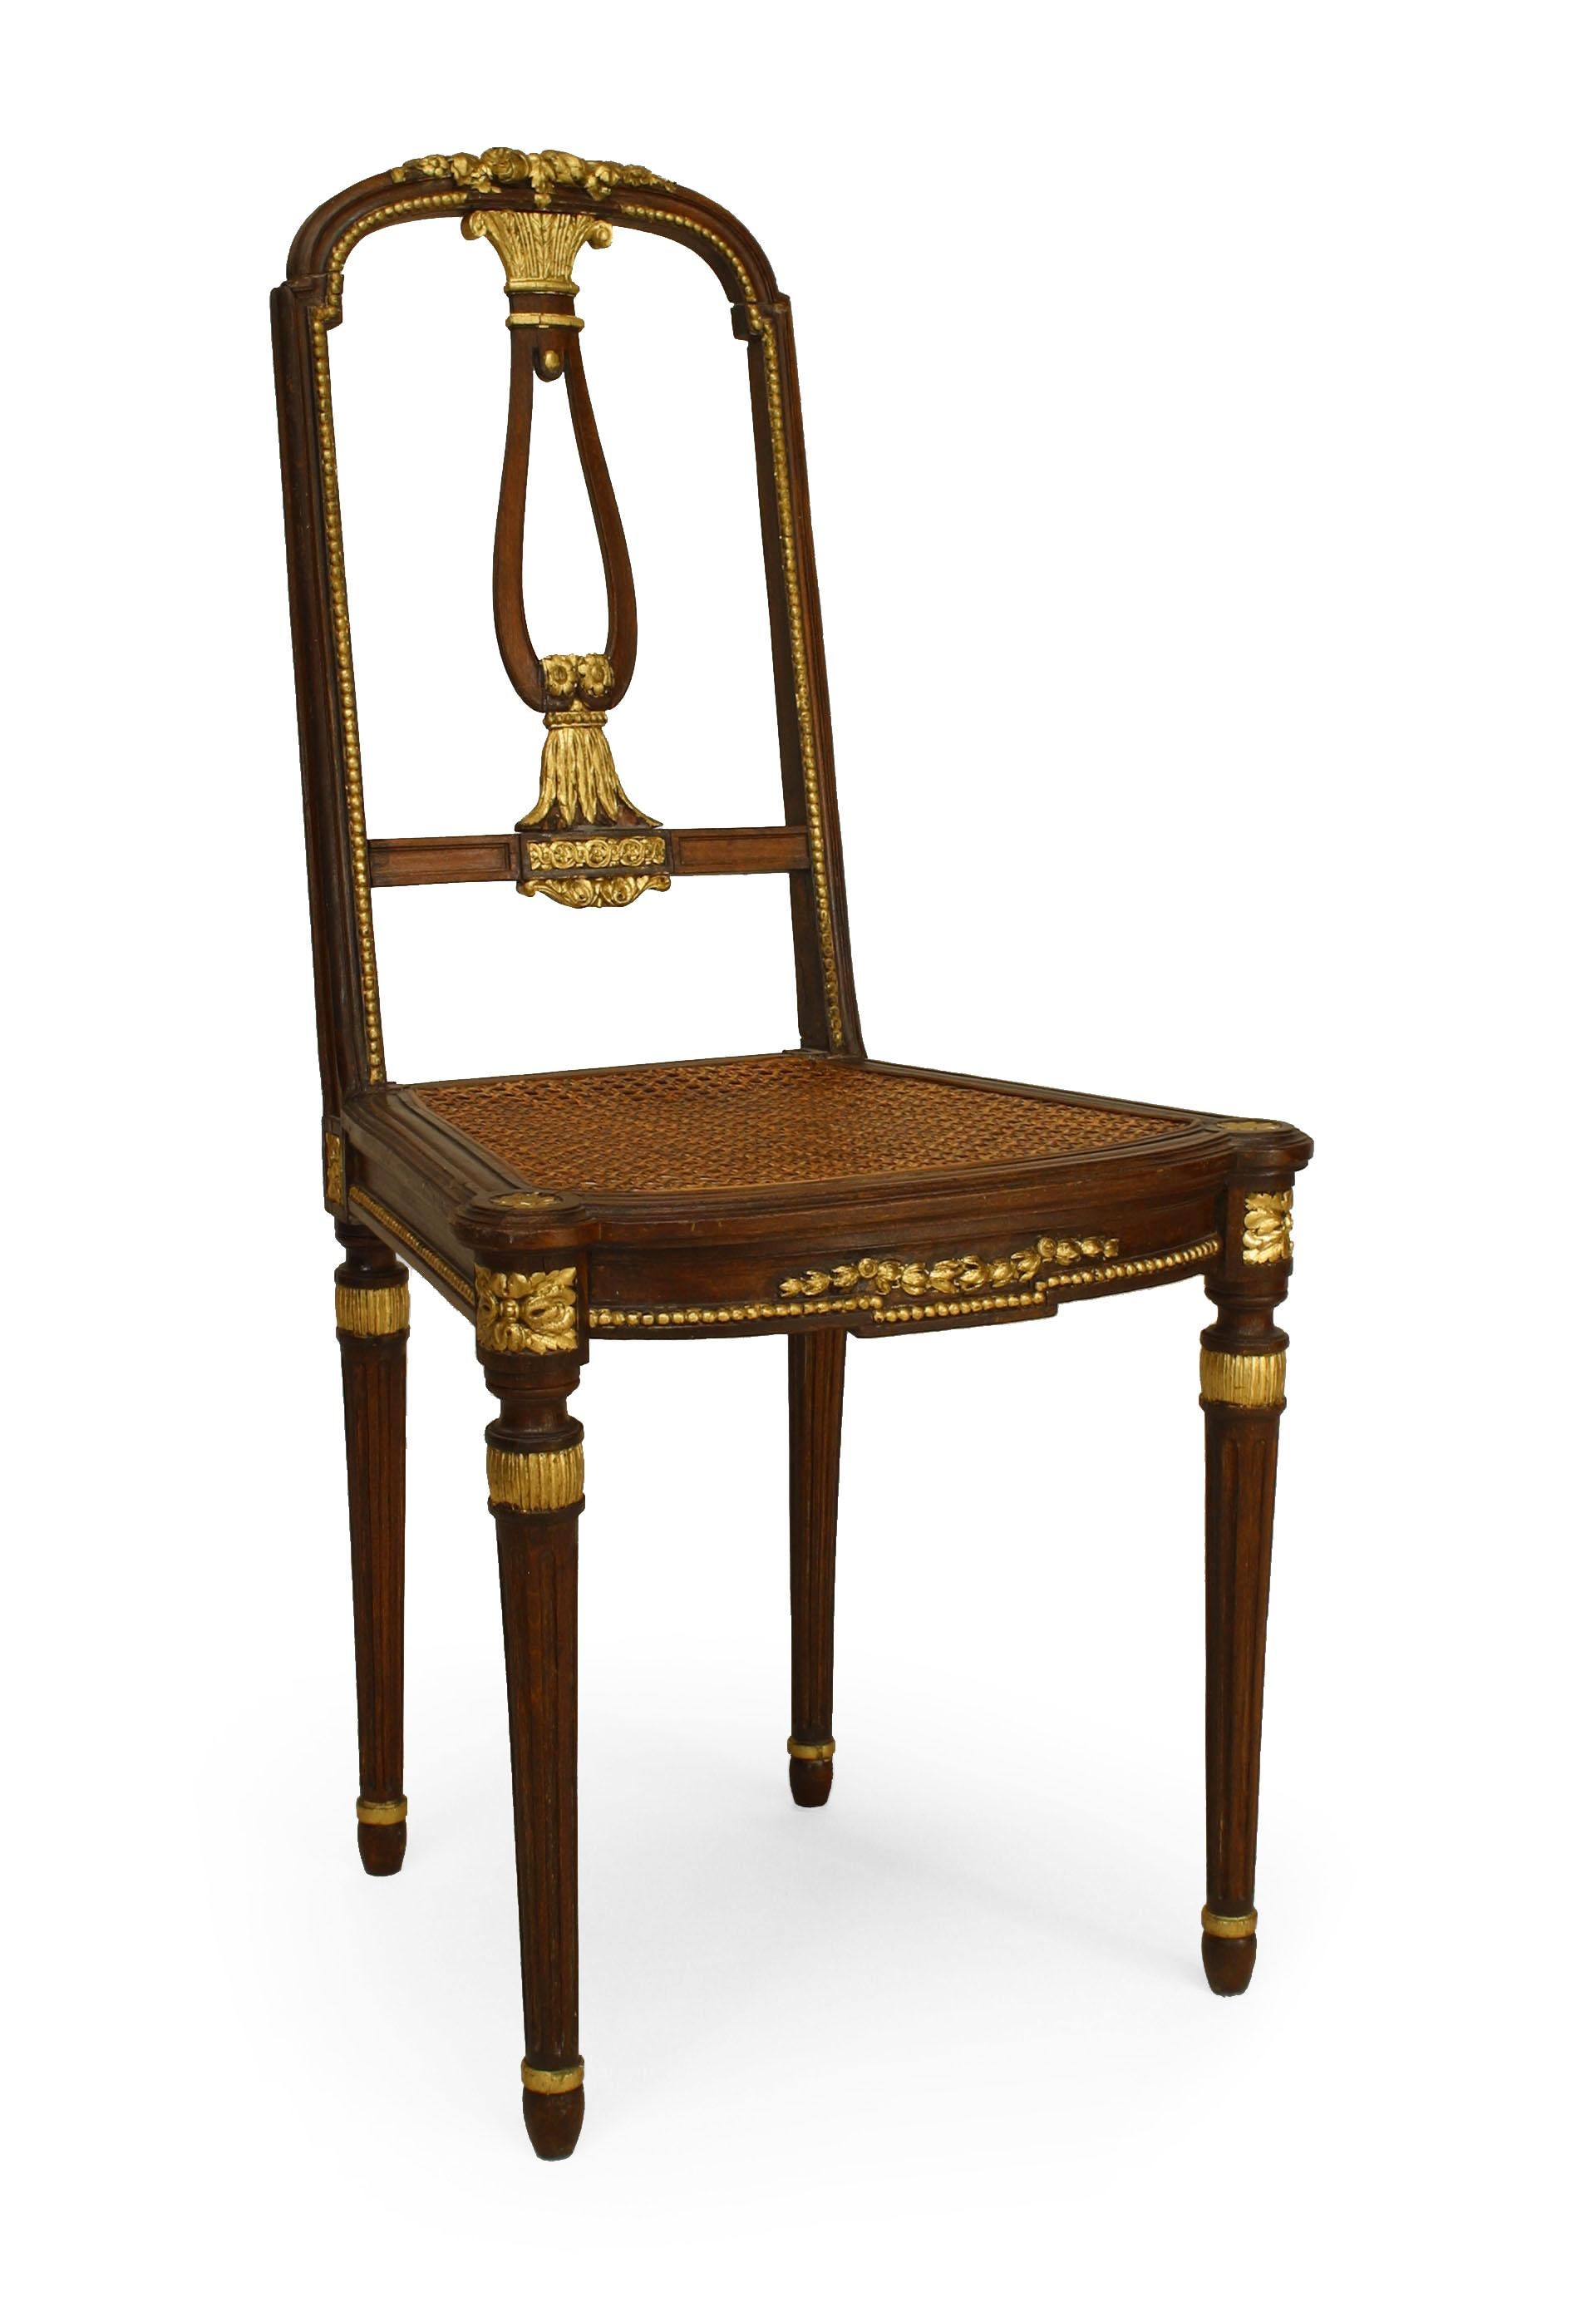 Paire de chaises d'appoint en acajou de style Louis XVI, datant du 20e siècle, avec garnitures dorées et dossiers ouverts avec sièges en rotin.